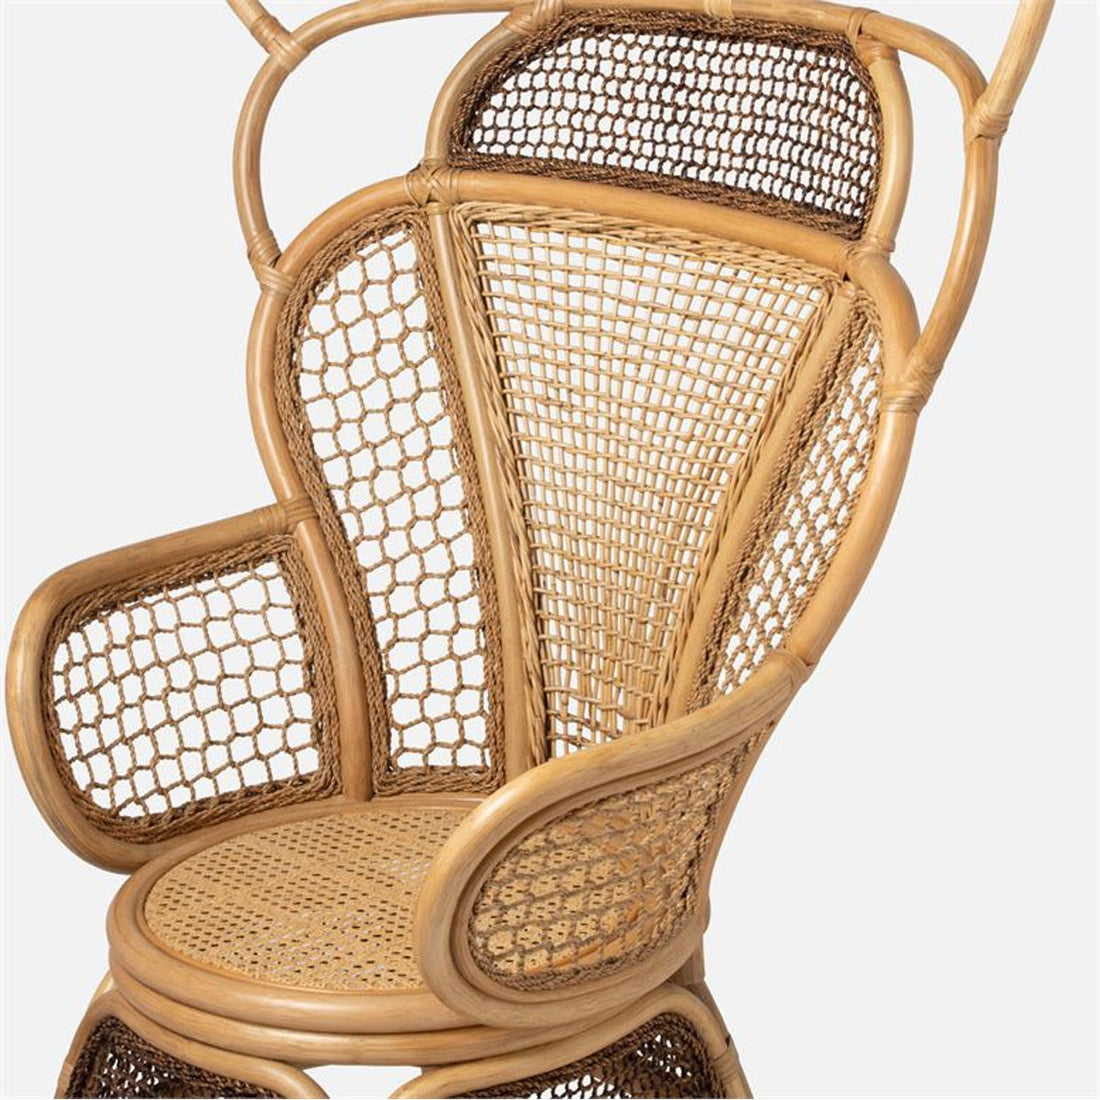 Made Goods Safiya Rattan Bamboo Lounge Chair